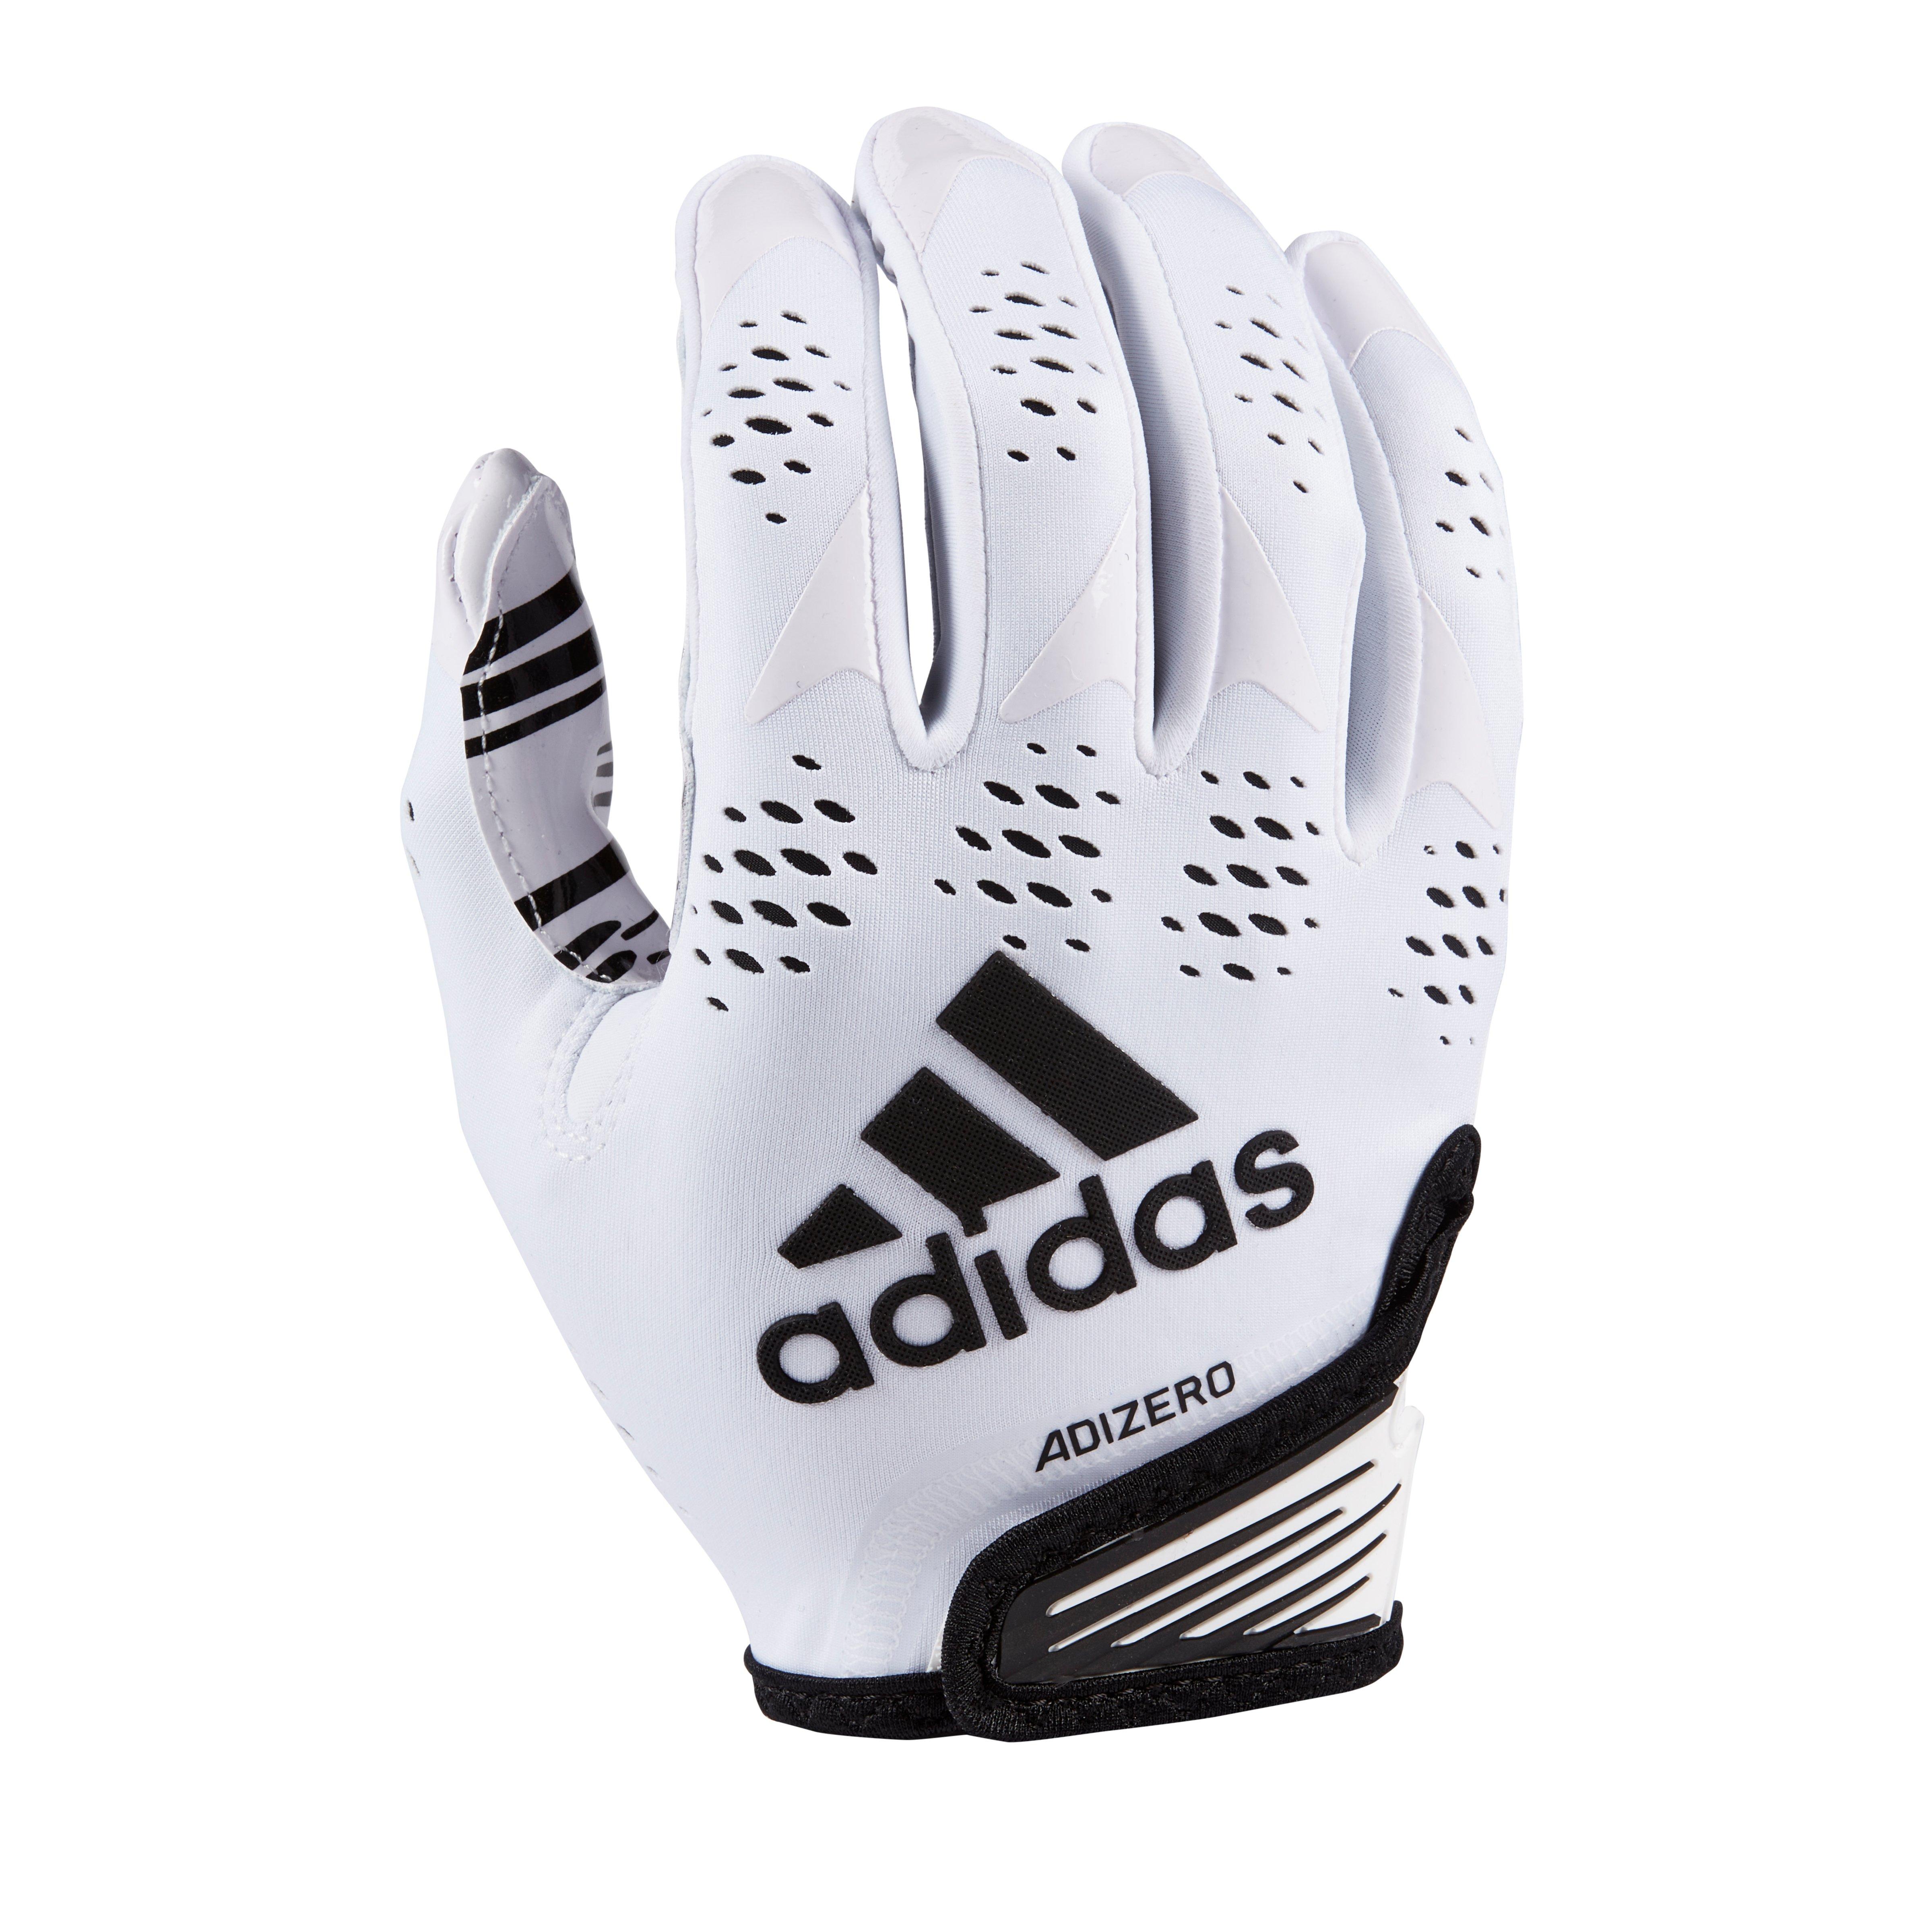 Adizero 12 Football Receiver Gloves - White/Black